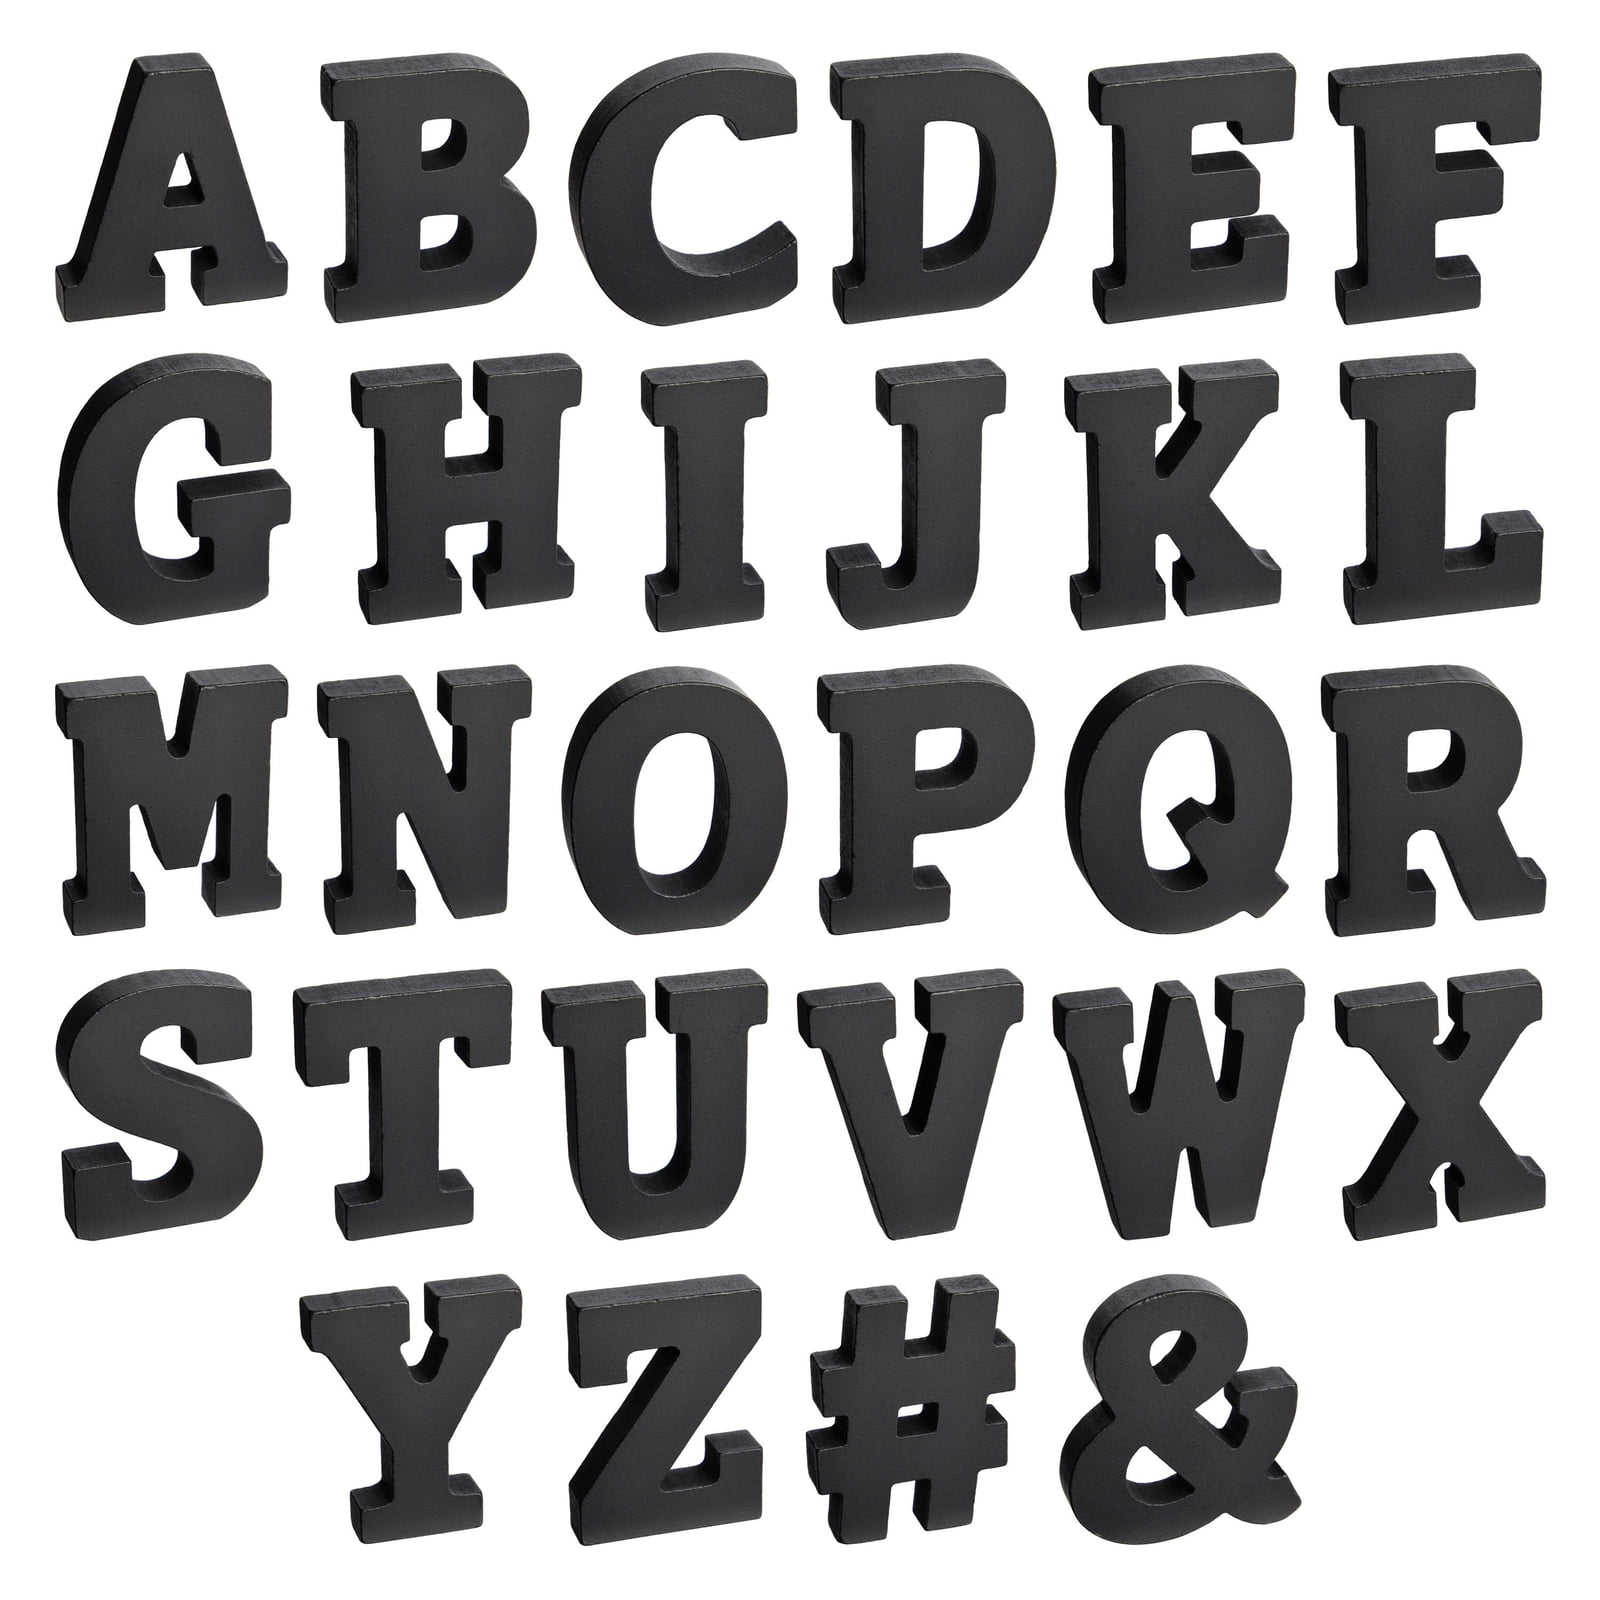 Diy 3D Decorative Alphabets  How to make 3D Letters 